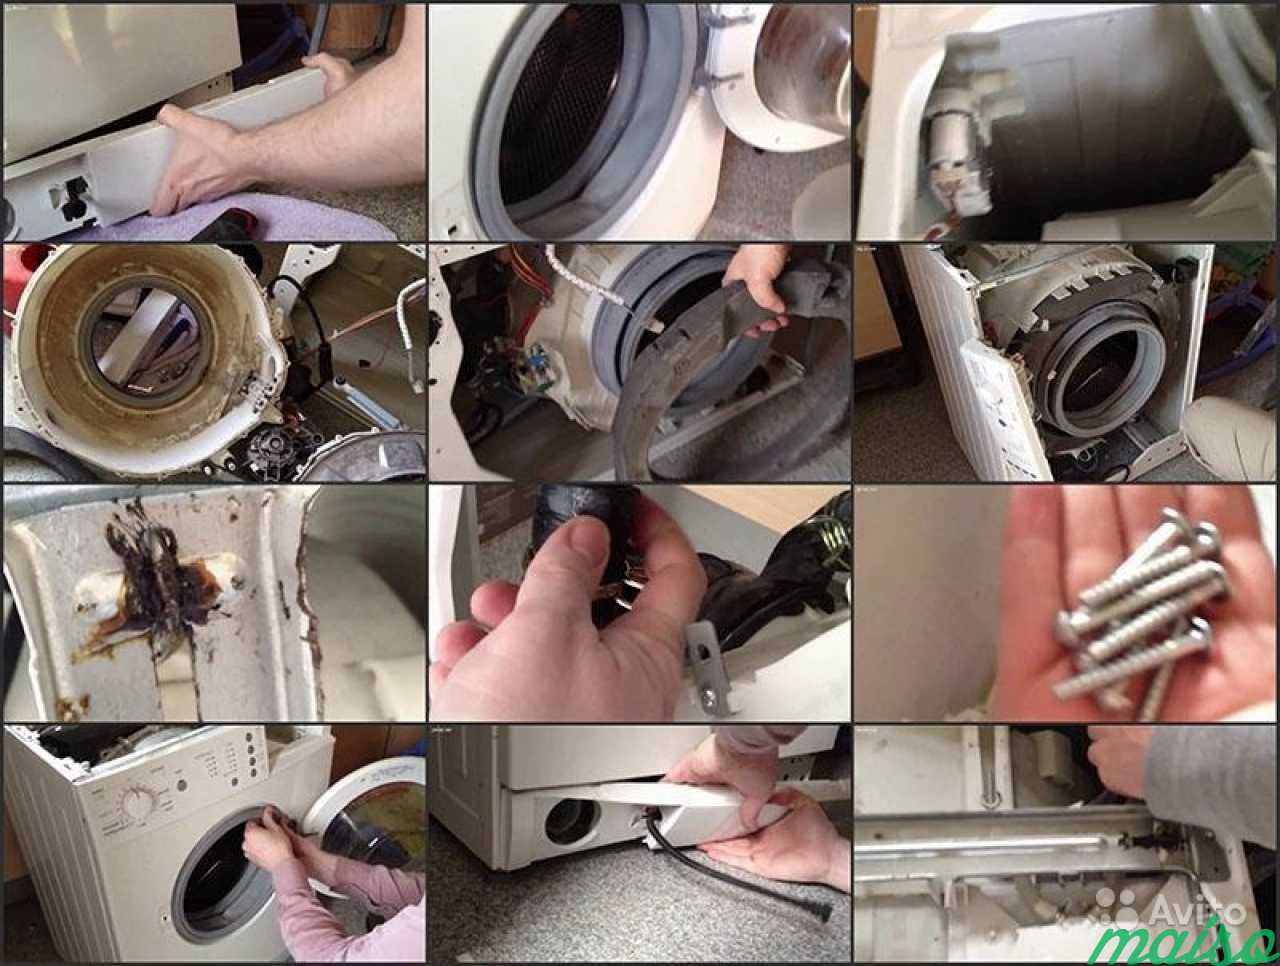 Ремонт стиральной машины своими руками: обзор возможных поломок и способов их устранения